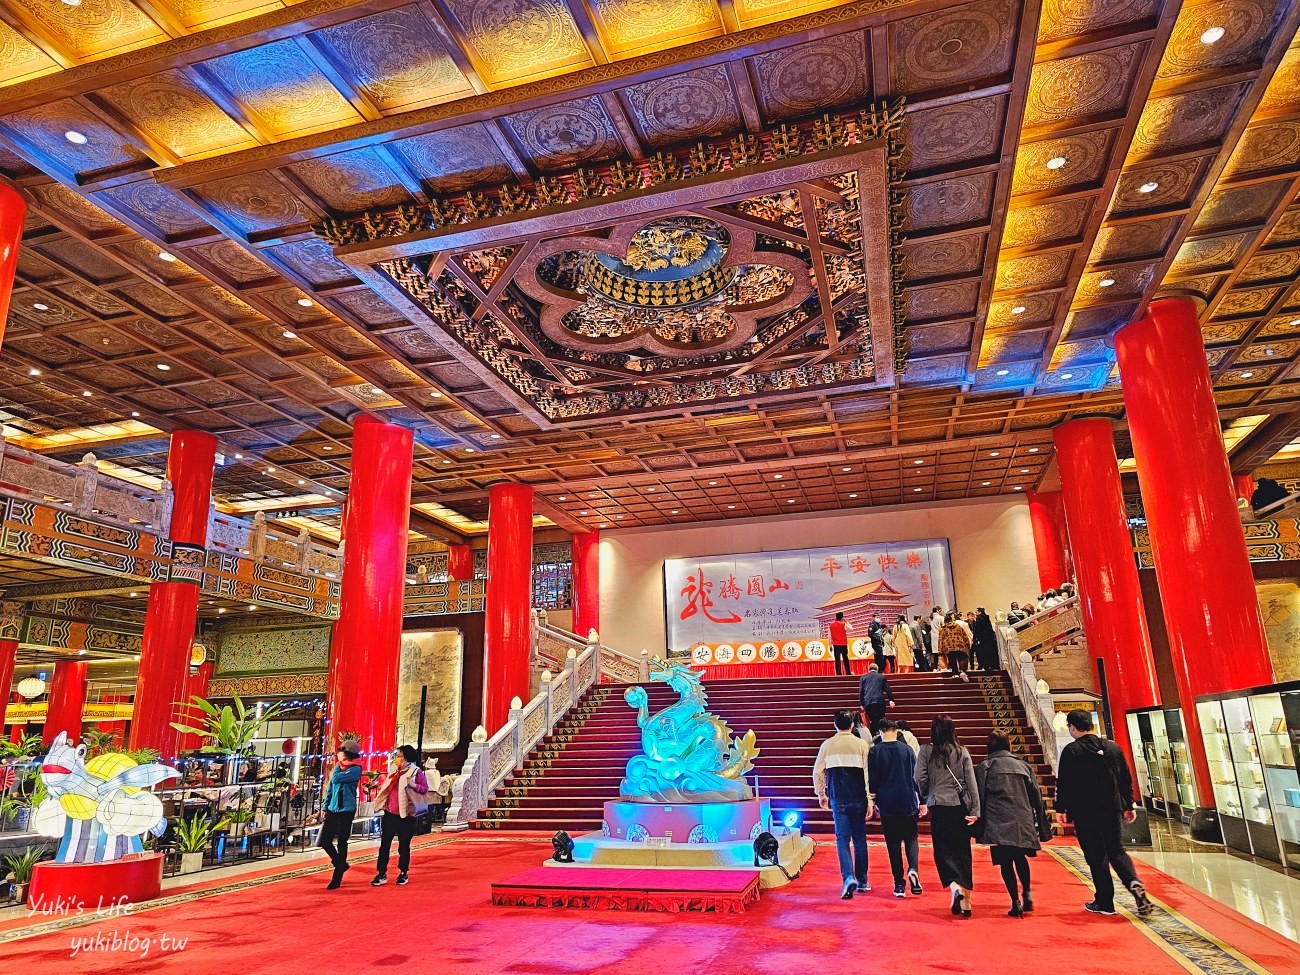 台北圓山大飯店「金龍餐廳」，合菜份量大、口味好，還能眺望美景的精緻饗宴 - yukiblog.tw